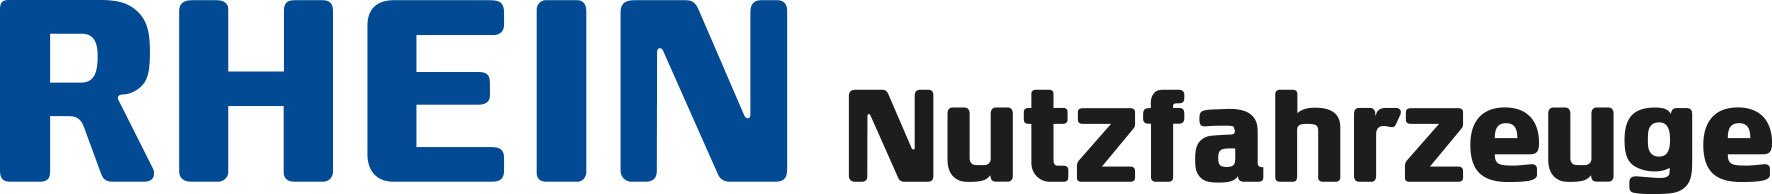 RN_Logo_4C.jpg